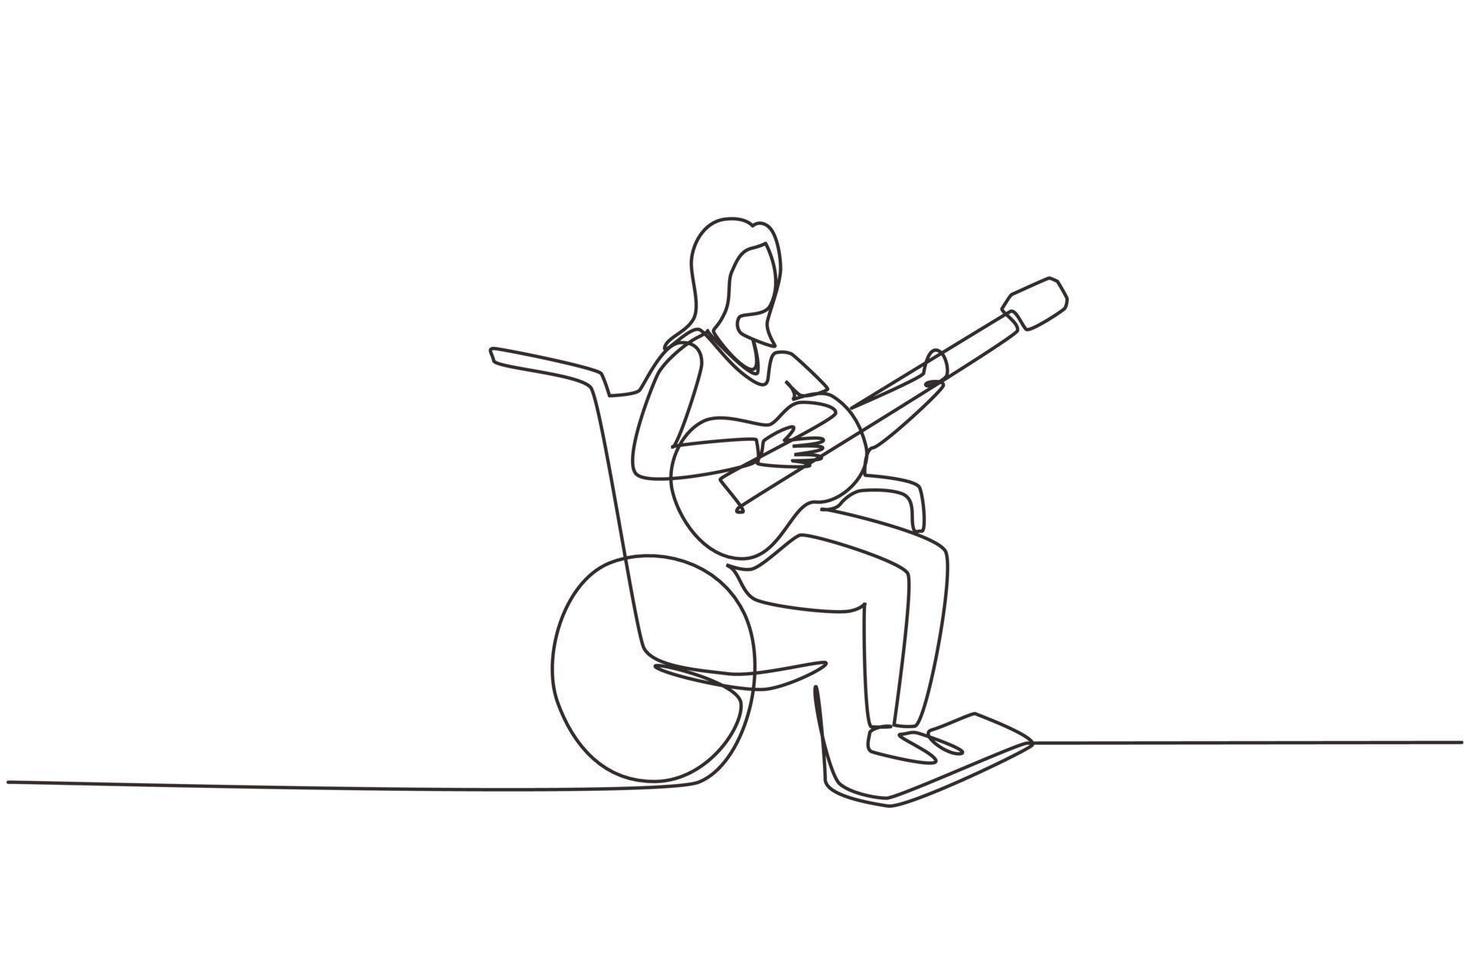 enkele doorlopende lijntekening vrouw zit rolstoel met akoestische gitaar muziek spelen, lied zingen. lichamelijk gehandicapt, gebroken been. patiënt in het revalidatiecentrum. één regel ontwerp vectorillustratie vector